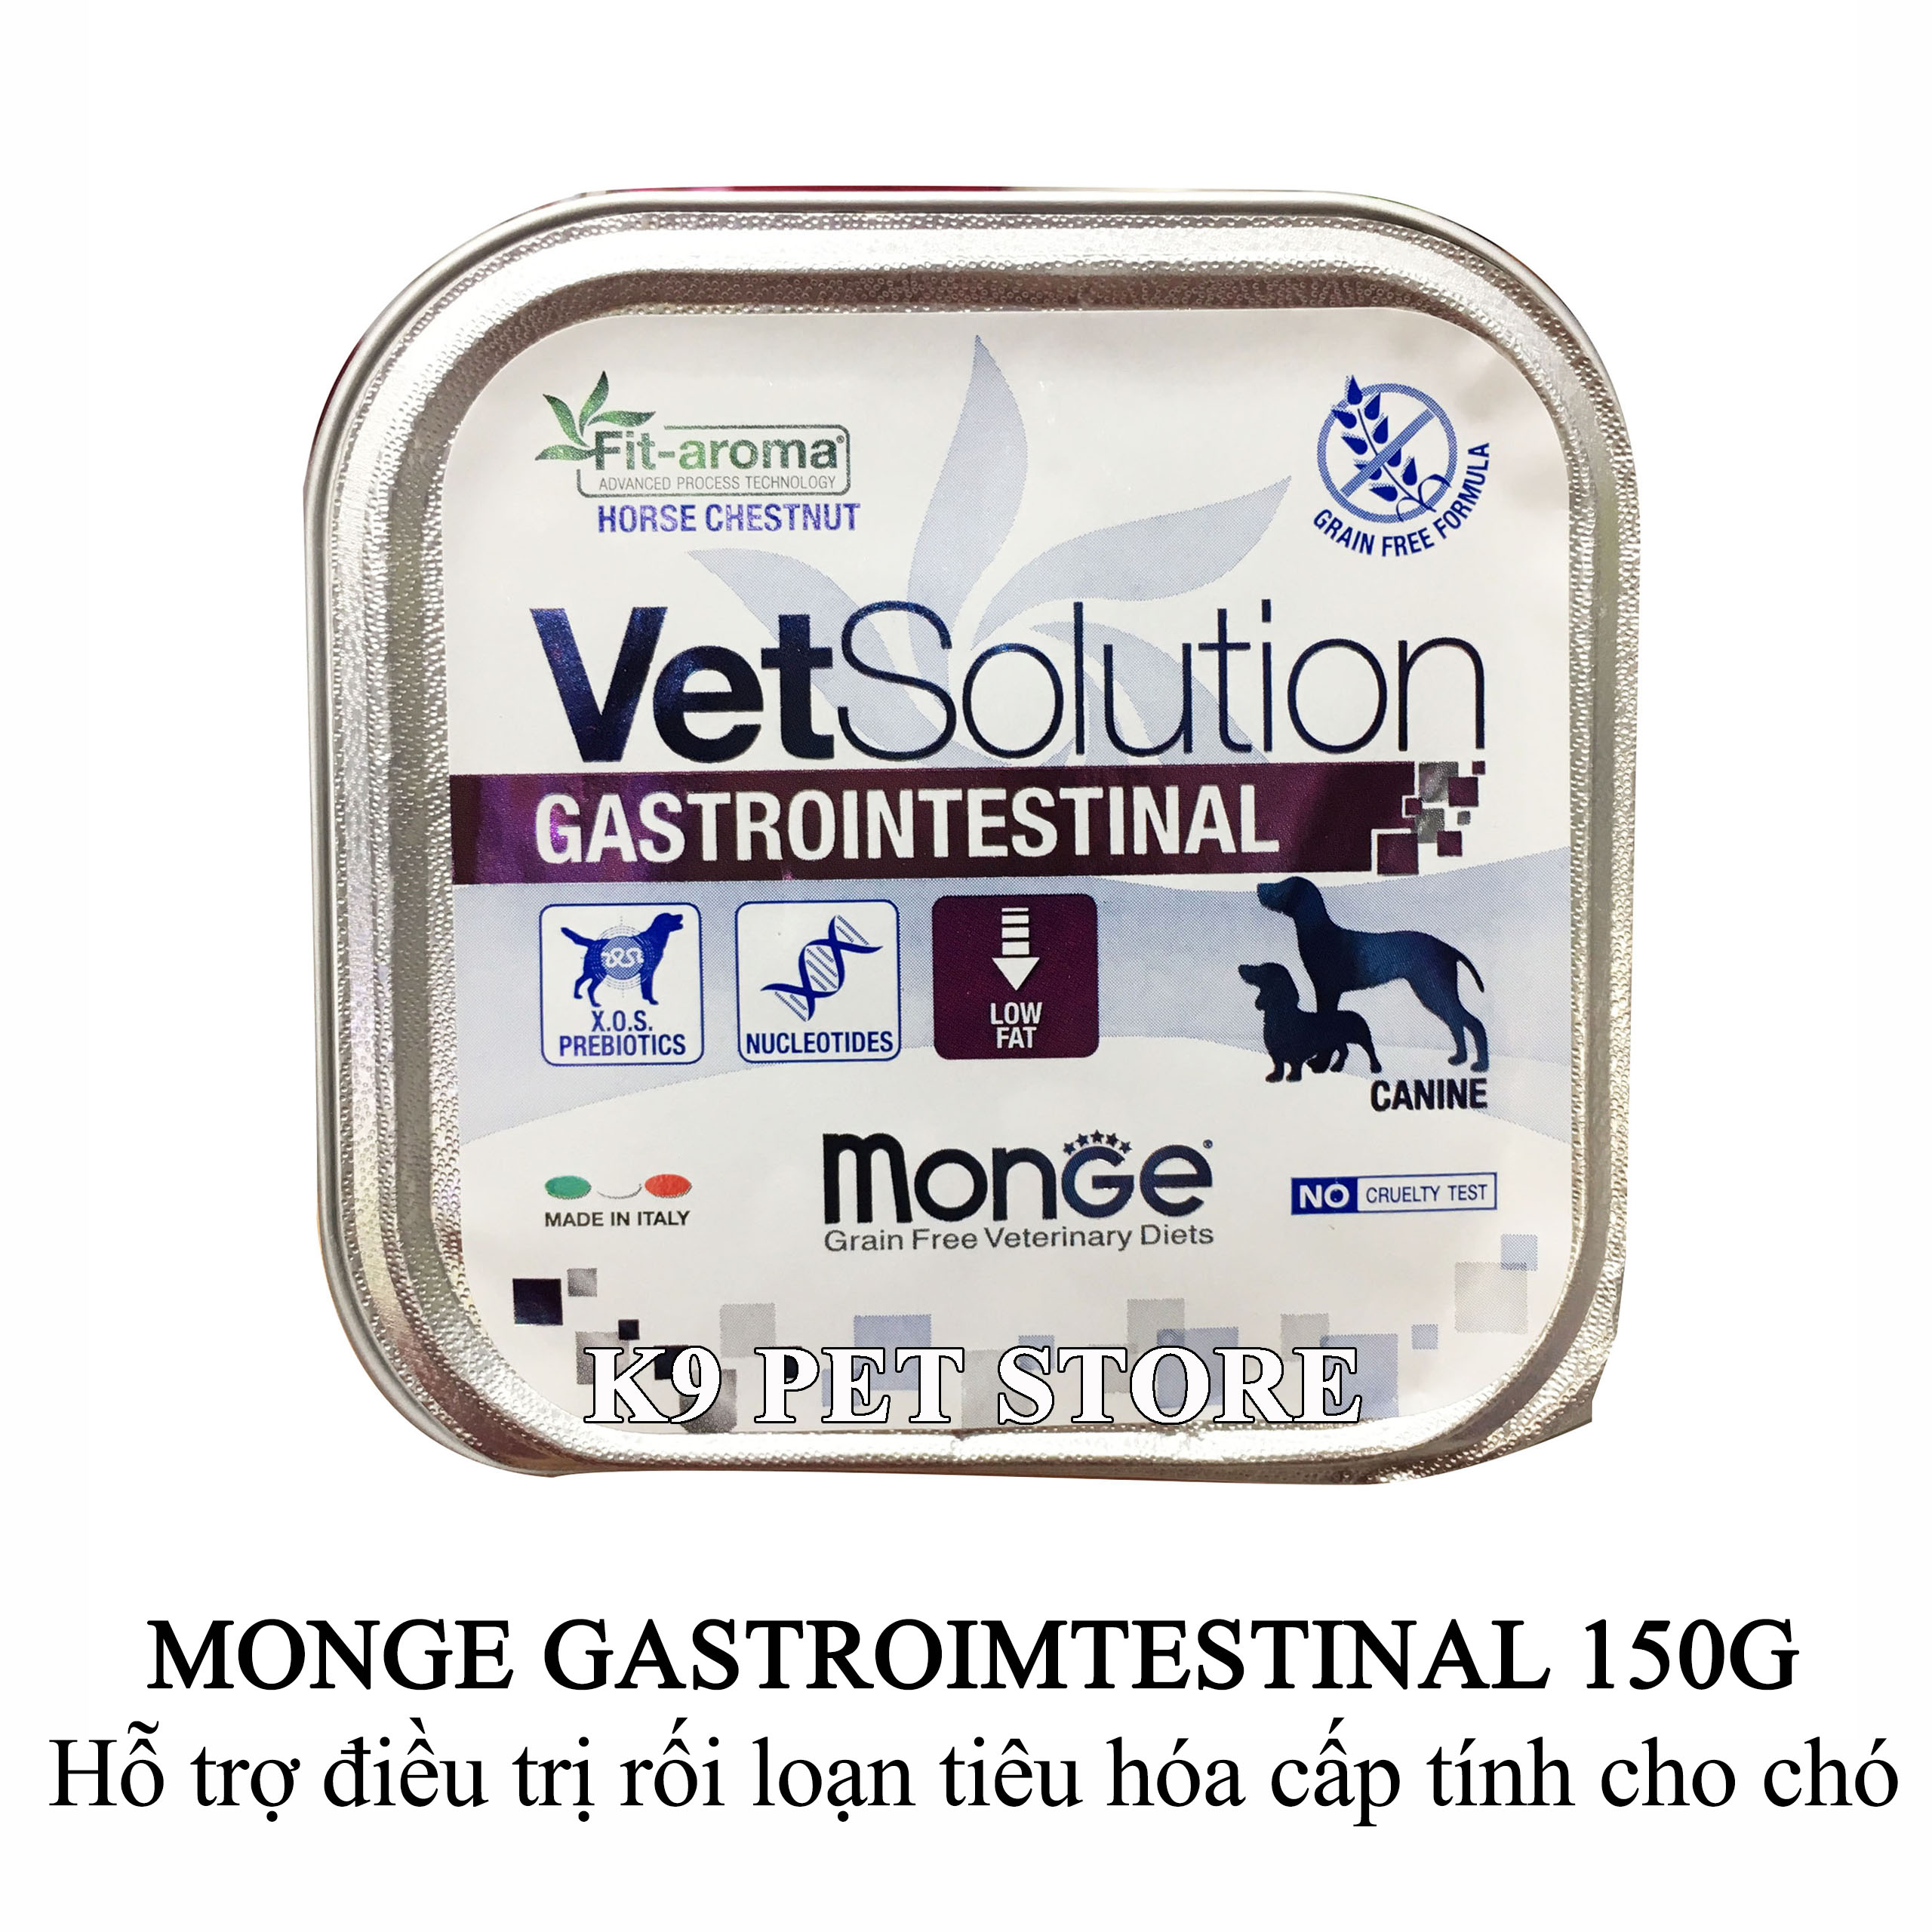 Pate Monge Gastrointestinal 150g - Hỗ trợ điều trị rối loạn tiêu hóa cấp tính cho chó